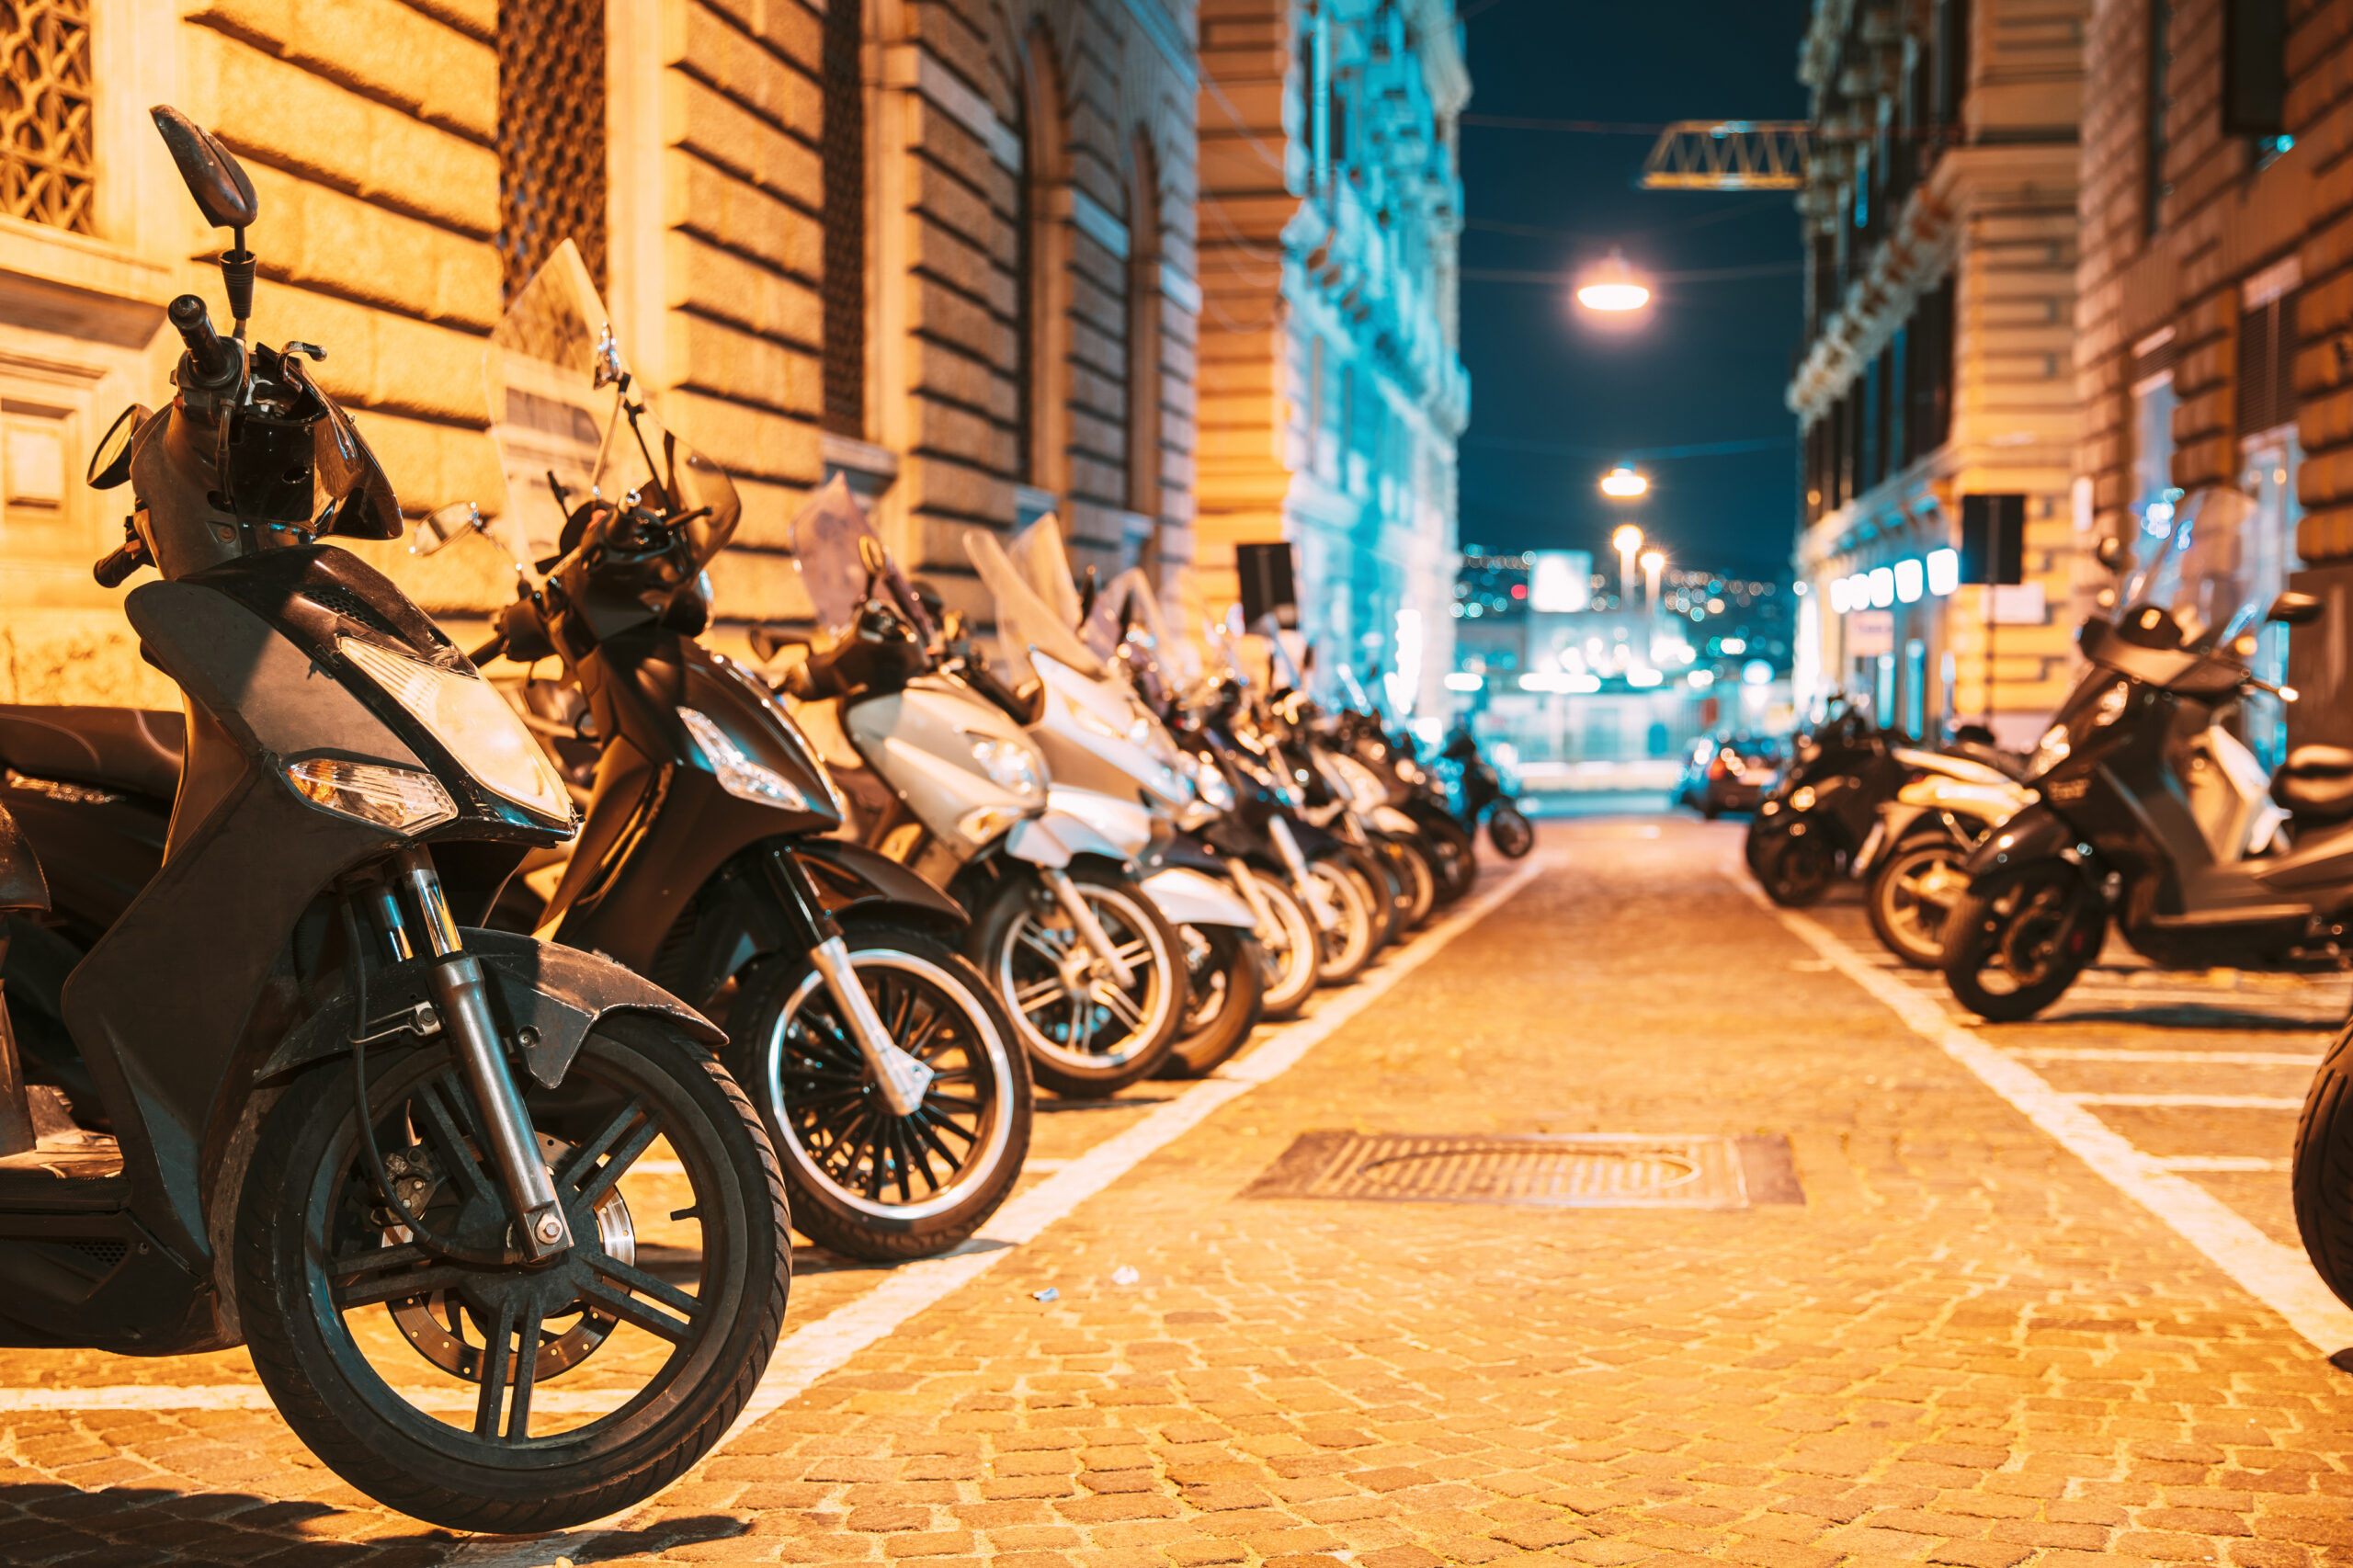 Plusieurs motos et scooters garés